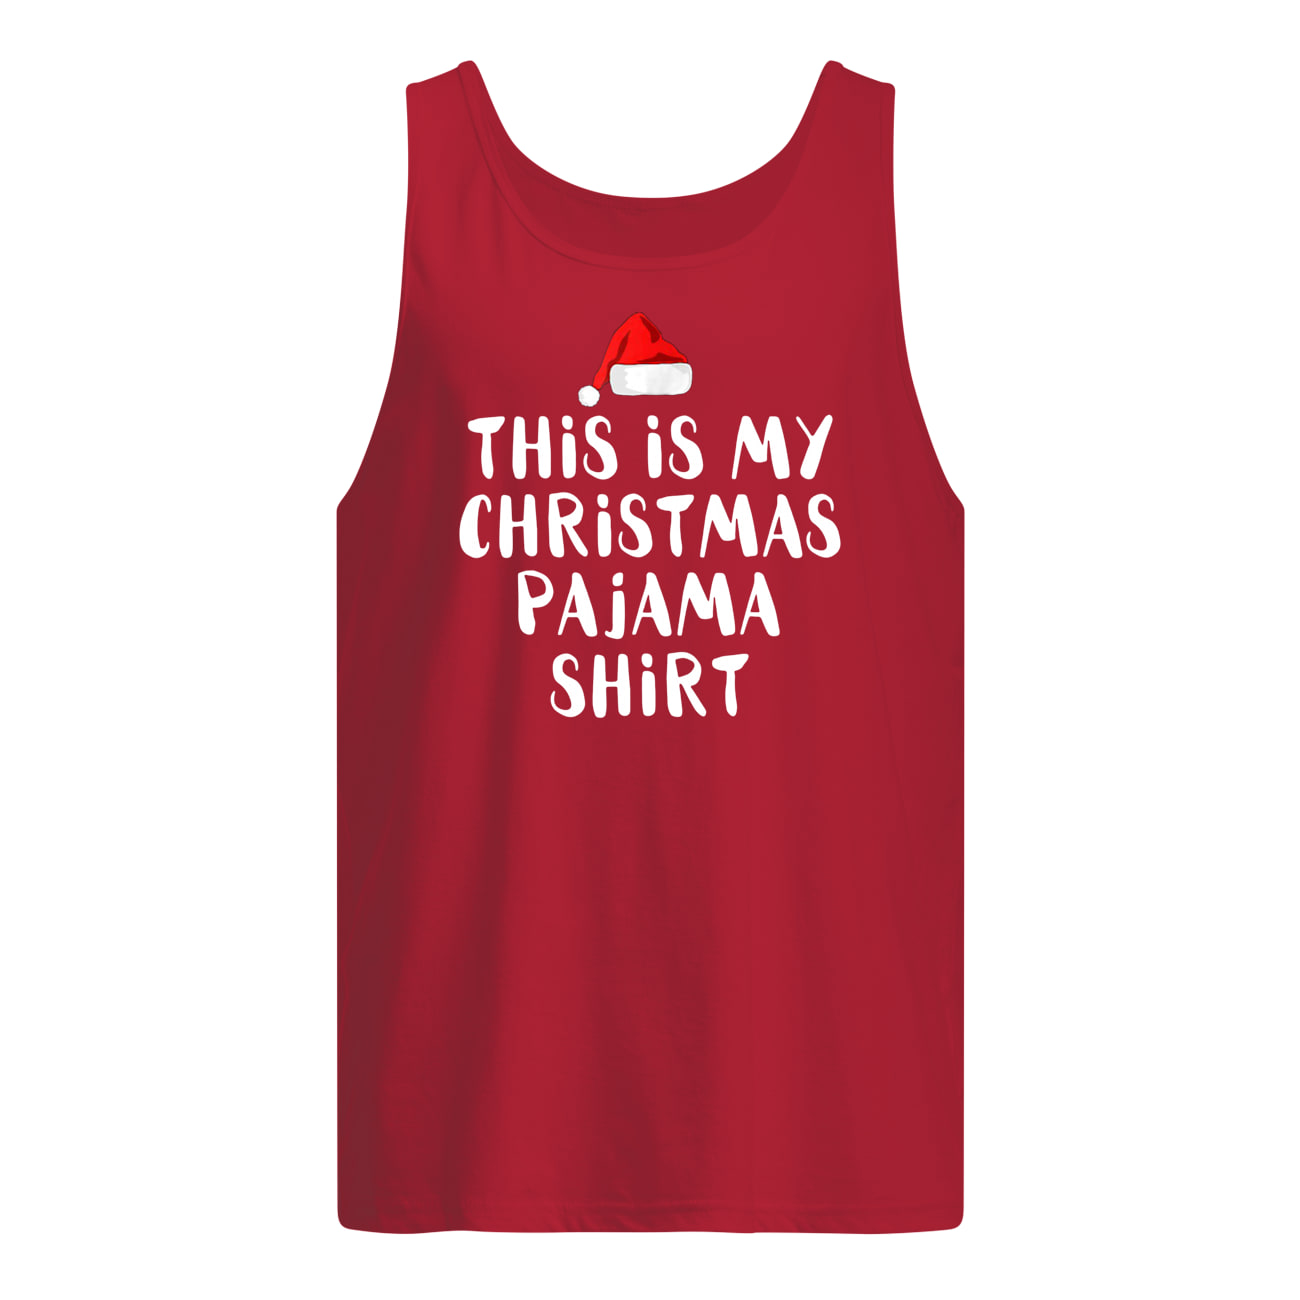 This is my christmas pajama tank top